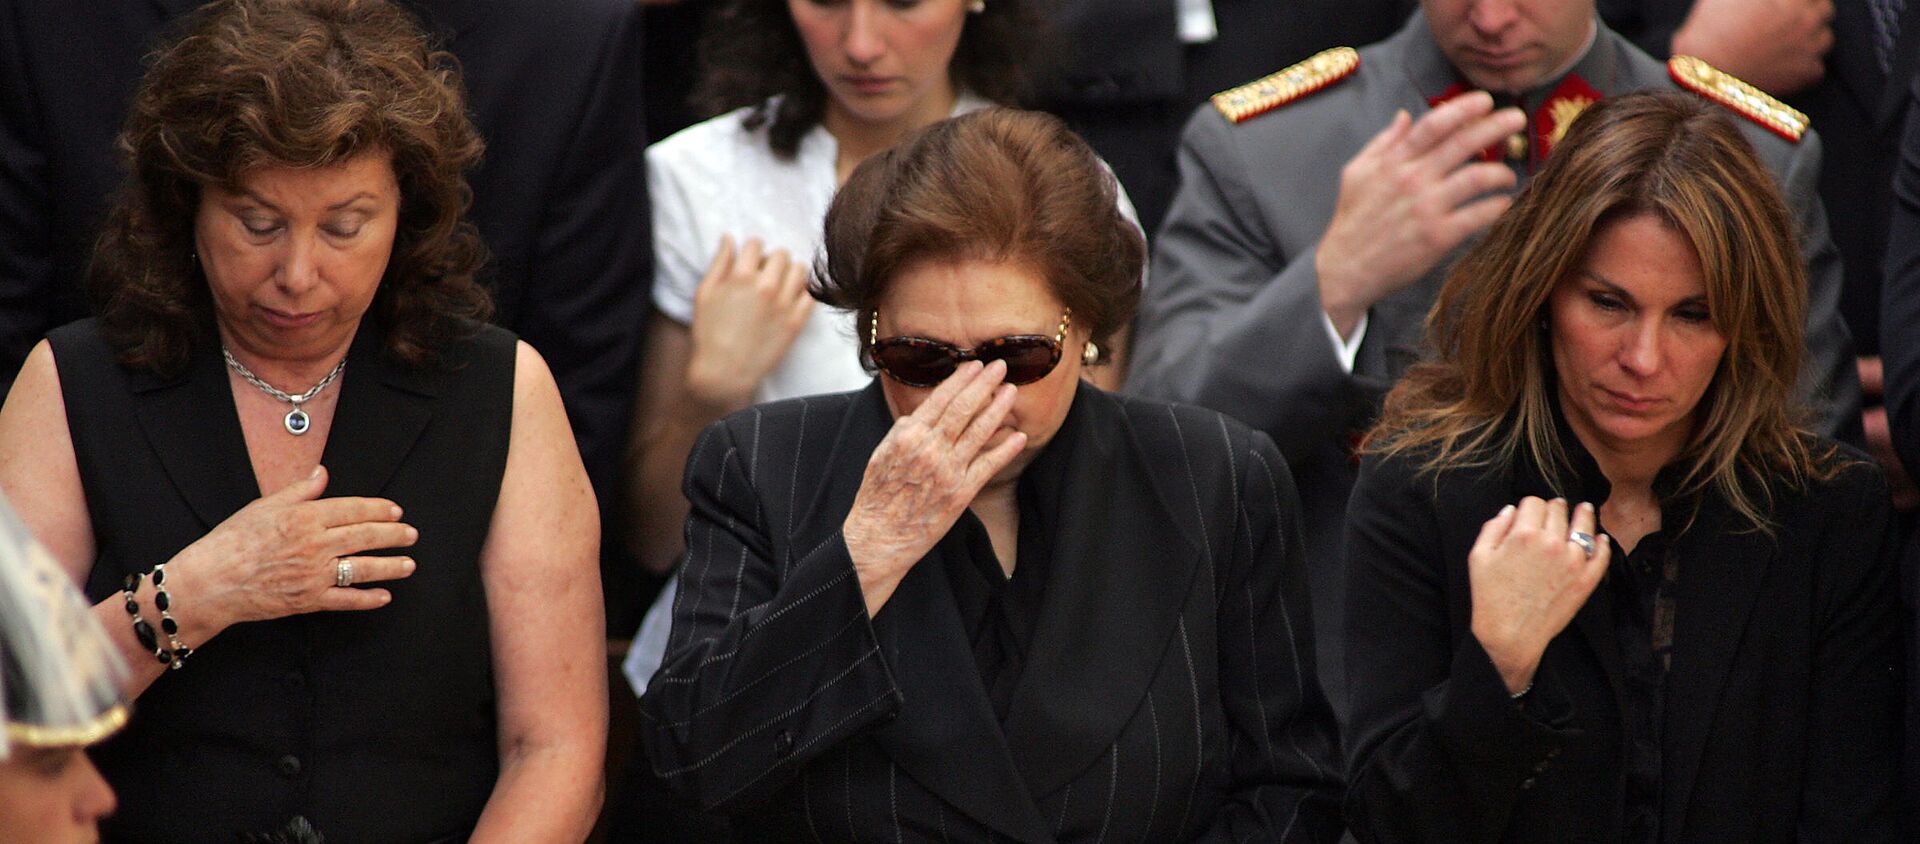 Lucía Hiriart, viuda de Augusto Pinochet, junto a sus dos hijas durante el funeral del exdictador chileno - Sputnik Mundo, 1920, 19.05.2017